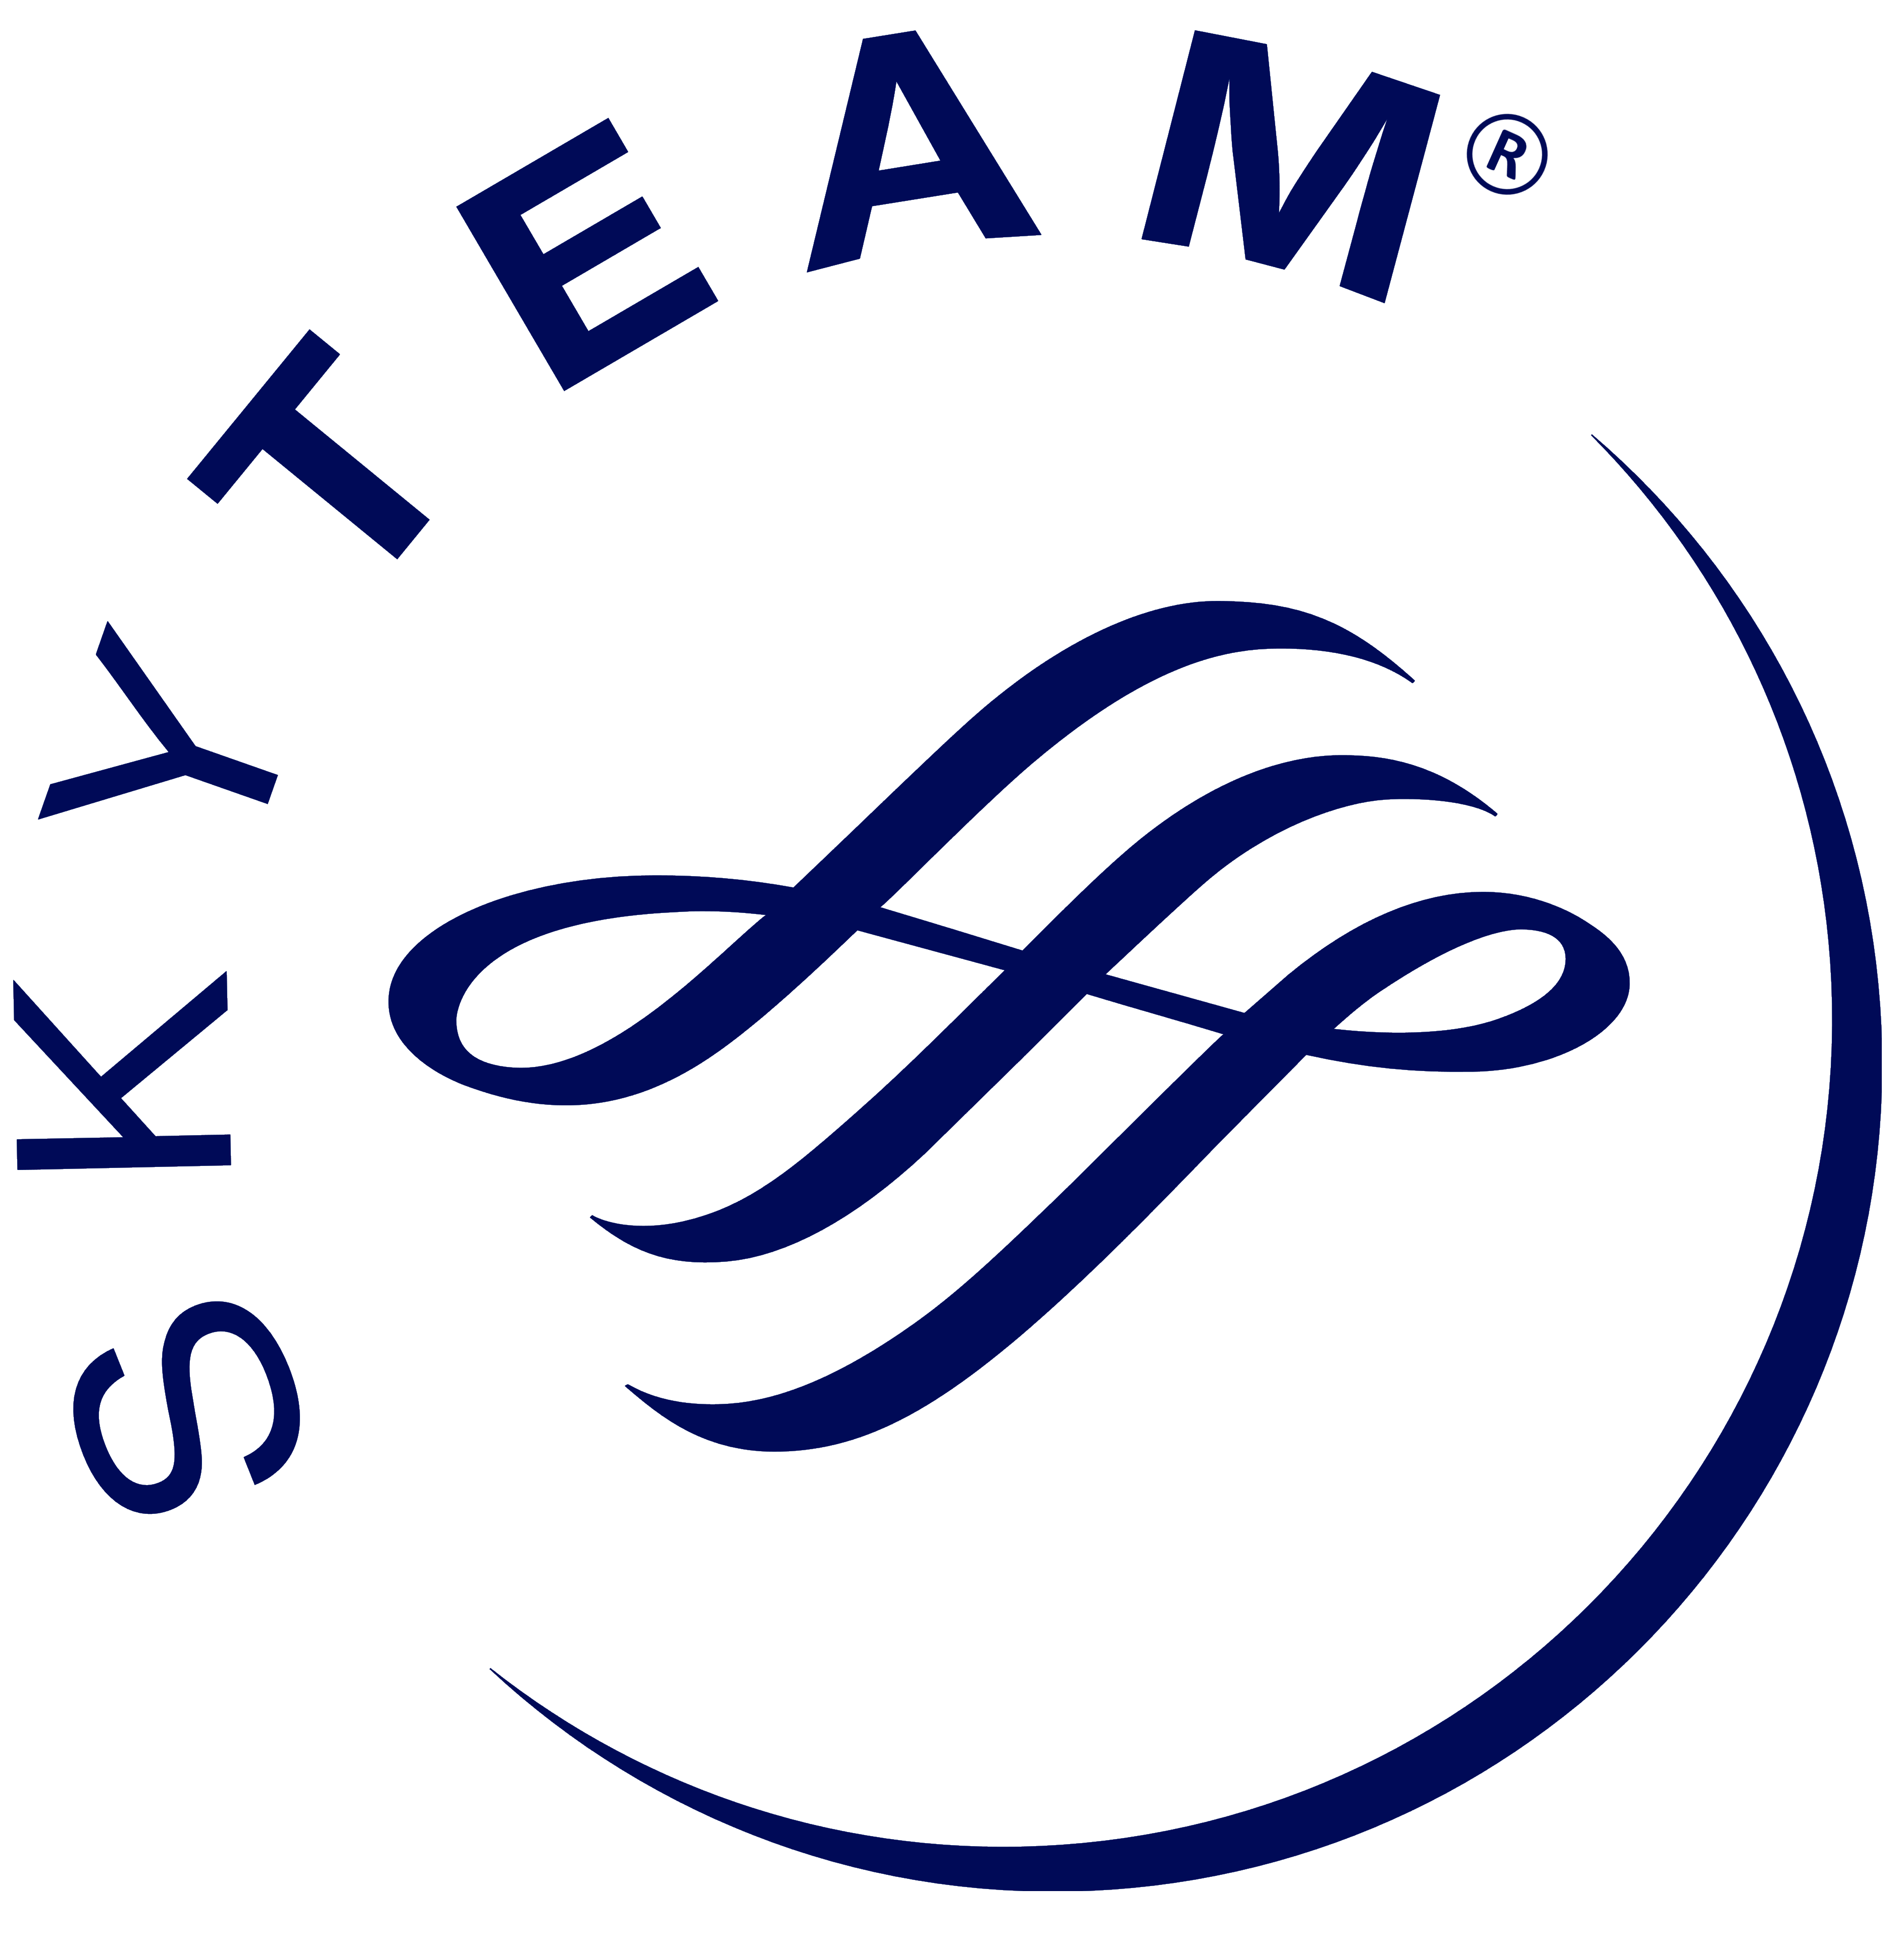 SkyTeam logo, logotype